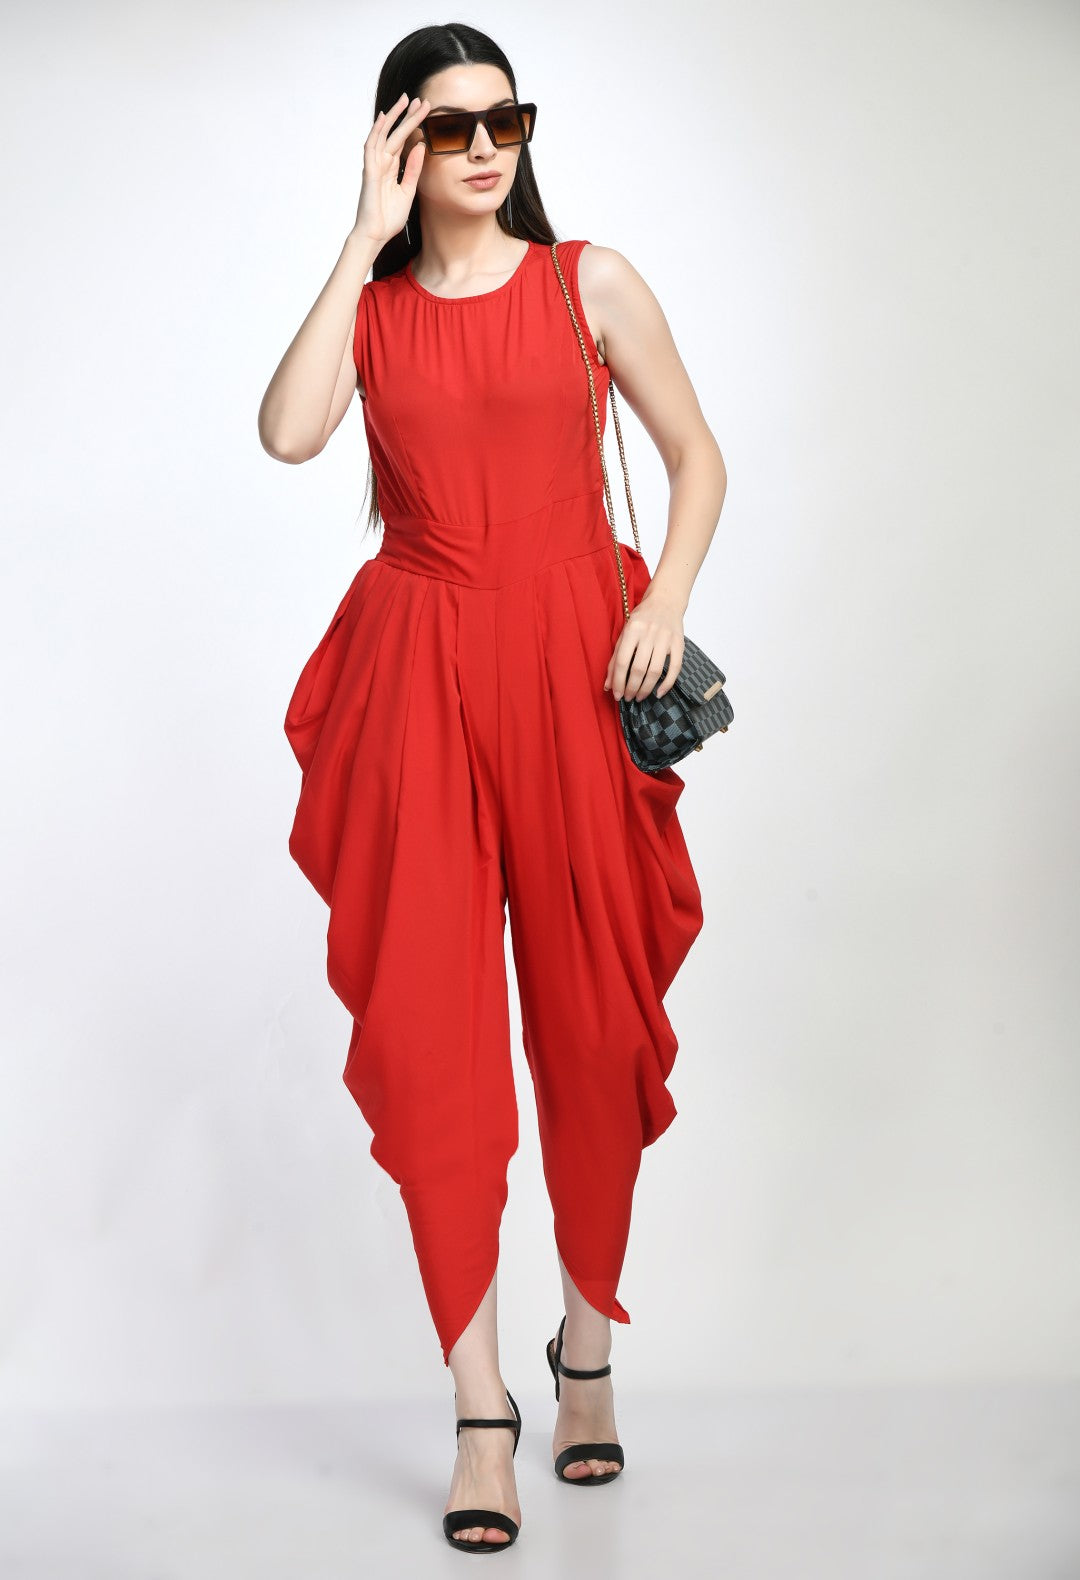 Classy Dhoti jumpsuit, stylish jumpsuit, one piece dress, stylish dress